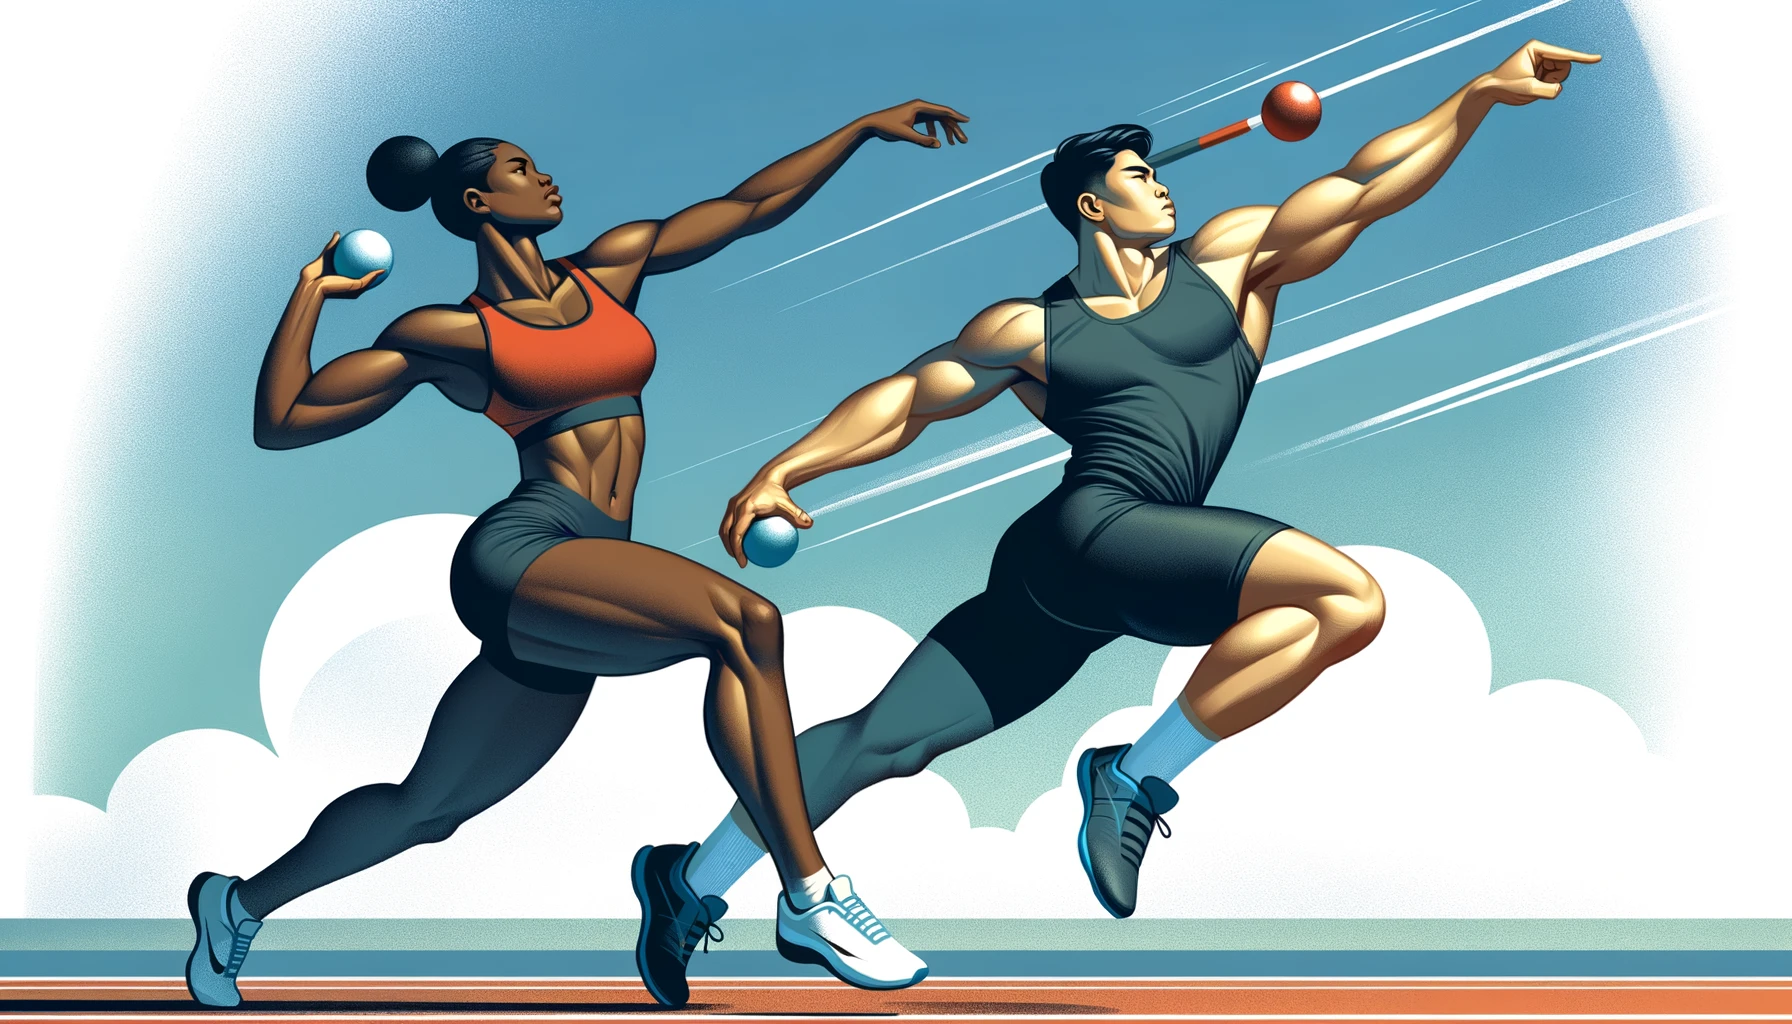 Illustration verschiedener Athleten, einer schwarzen Frau und eines asiatischen Mannes, die im Kugelstoßen gegeneinander antreten.